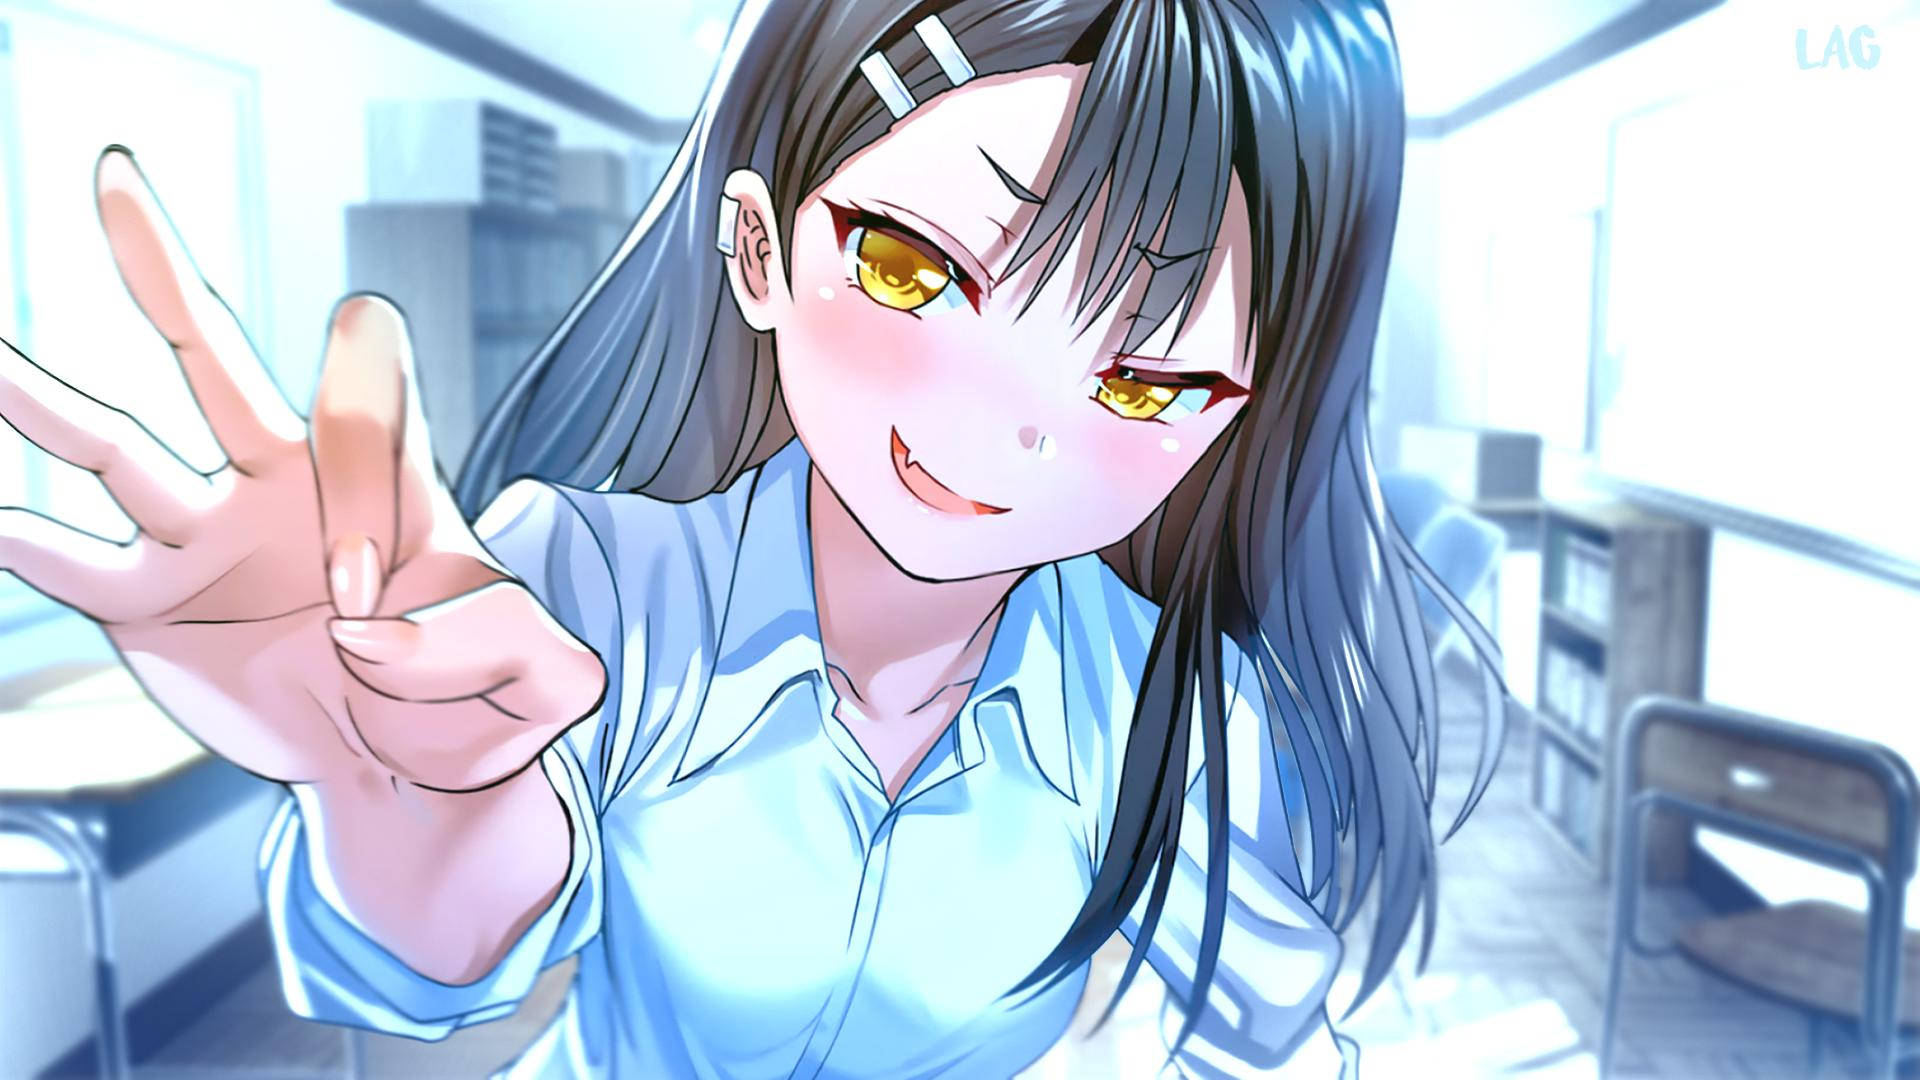 Nagatoro Flicking Her Finger